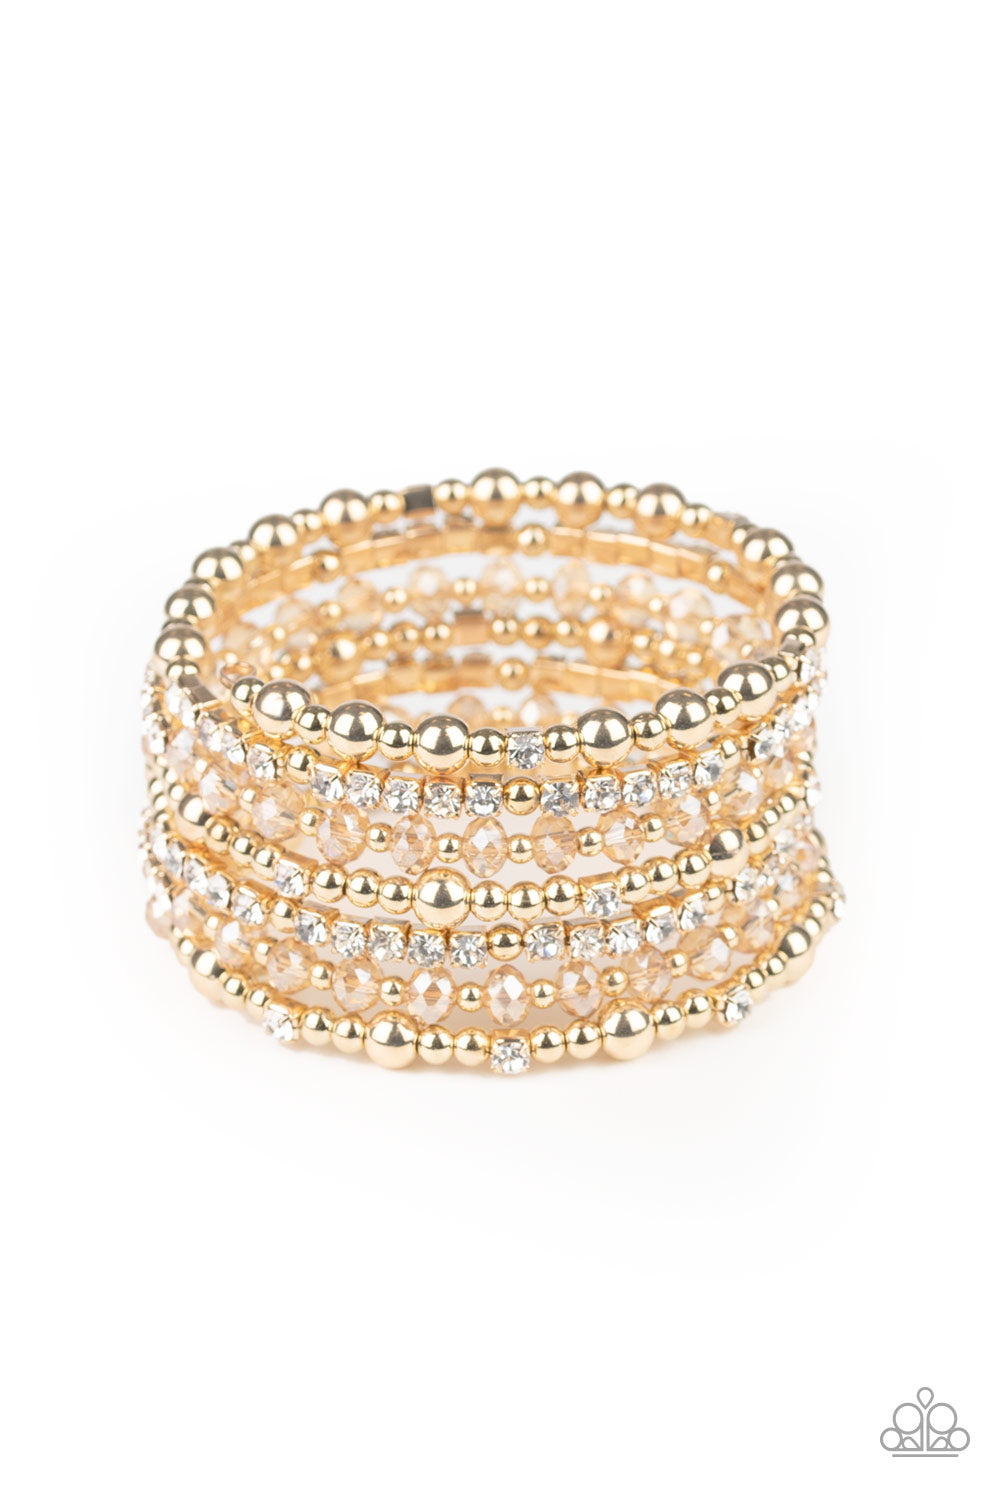 ICE Knowing You - gold - Paparazzi bracelet – JewelryBlingThing